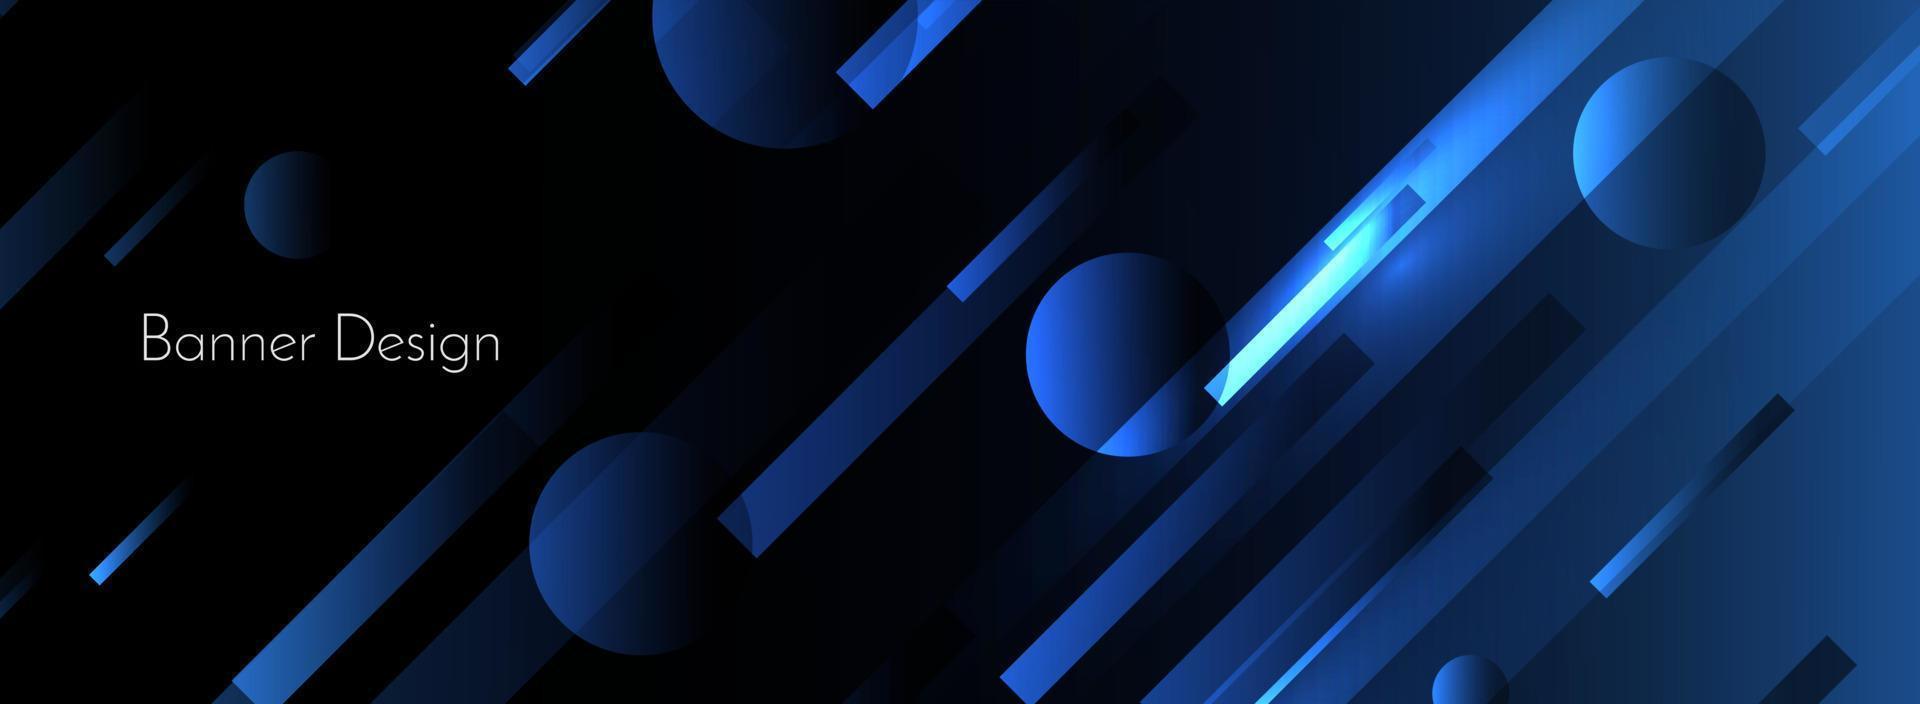 abstracto geométrico azul dinámico elegante forma moderna patrón colorido fondo vector